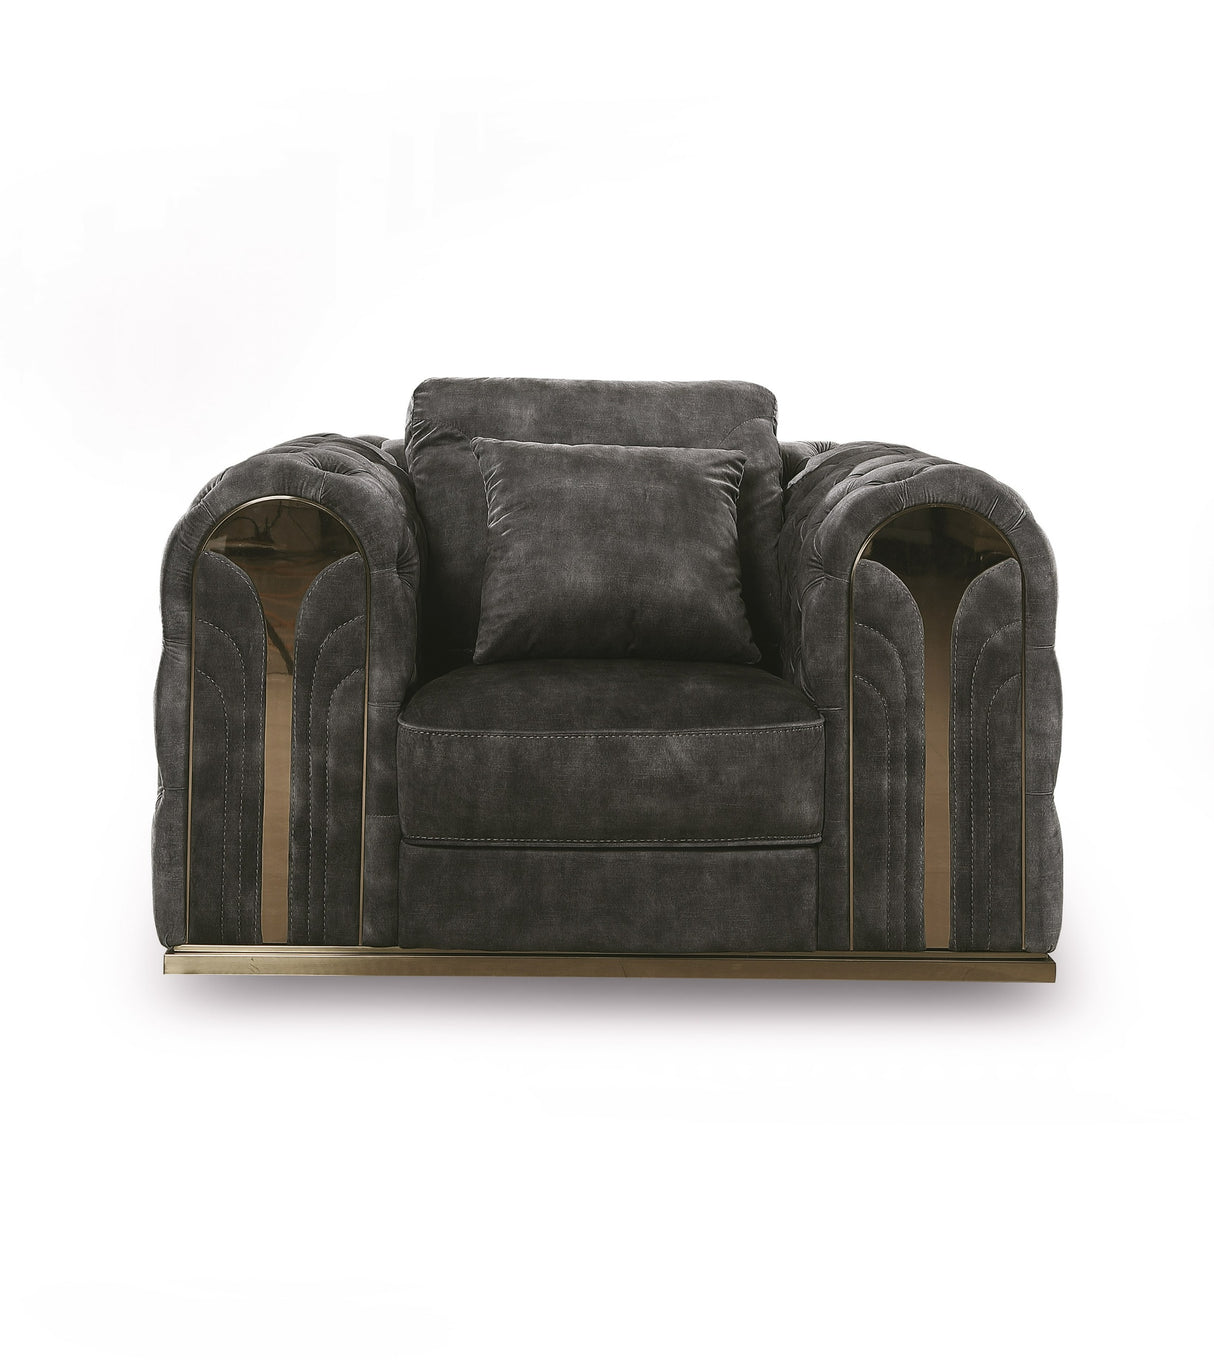 Vig Furniture Divani Casa Dosie - Transitional Grey Velvet Chair